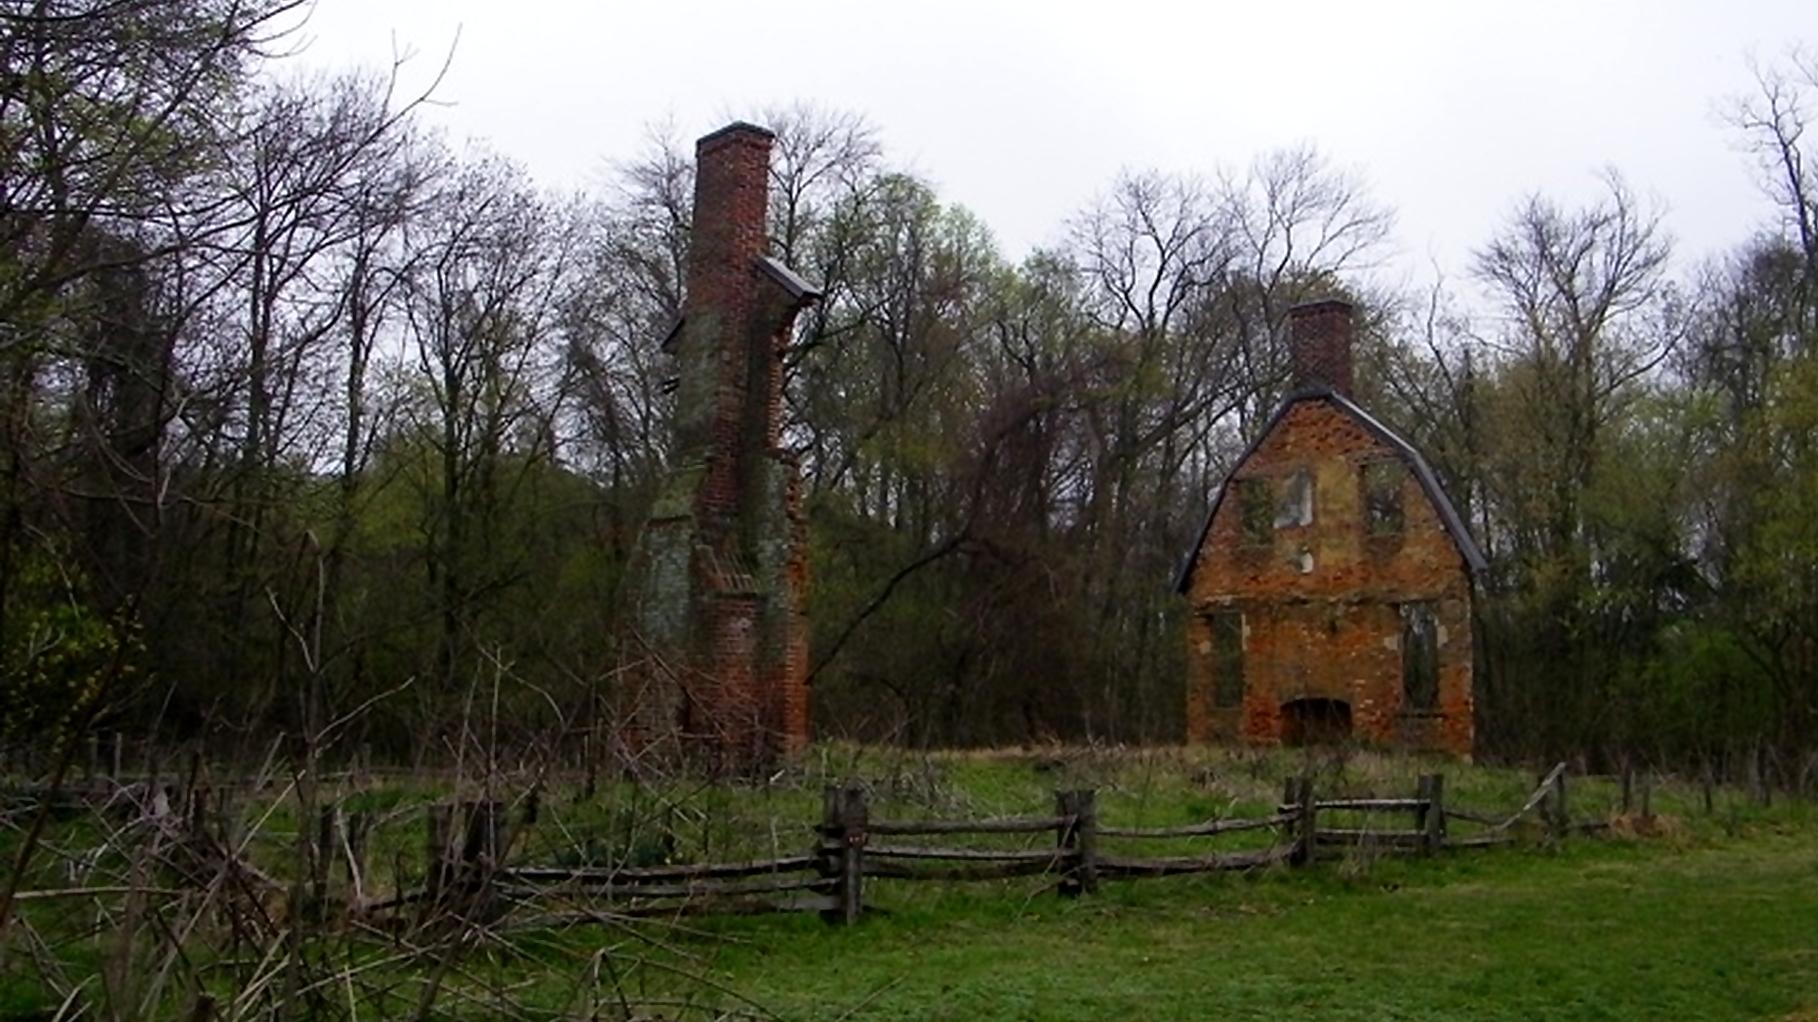 Ruins of a brick chimney and wall.